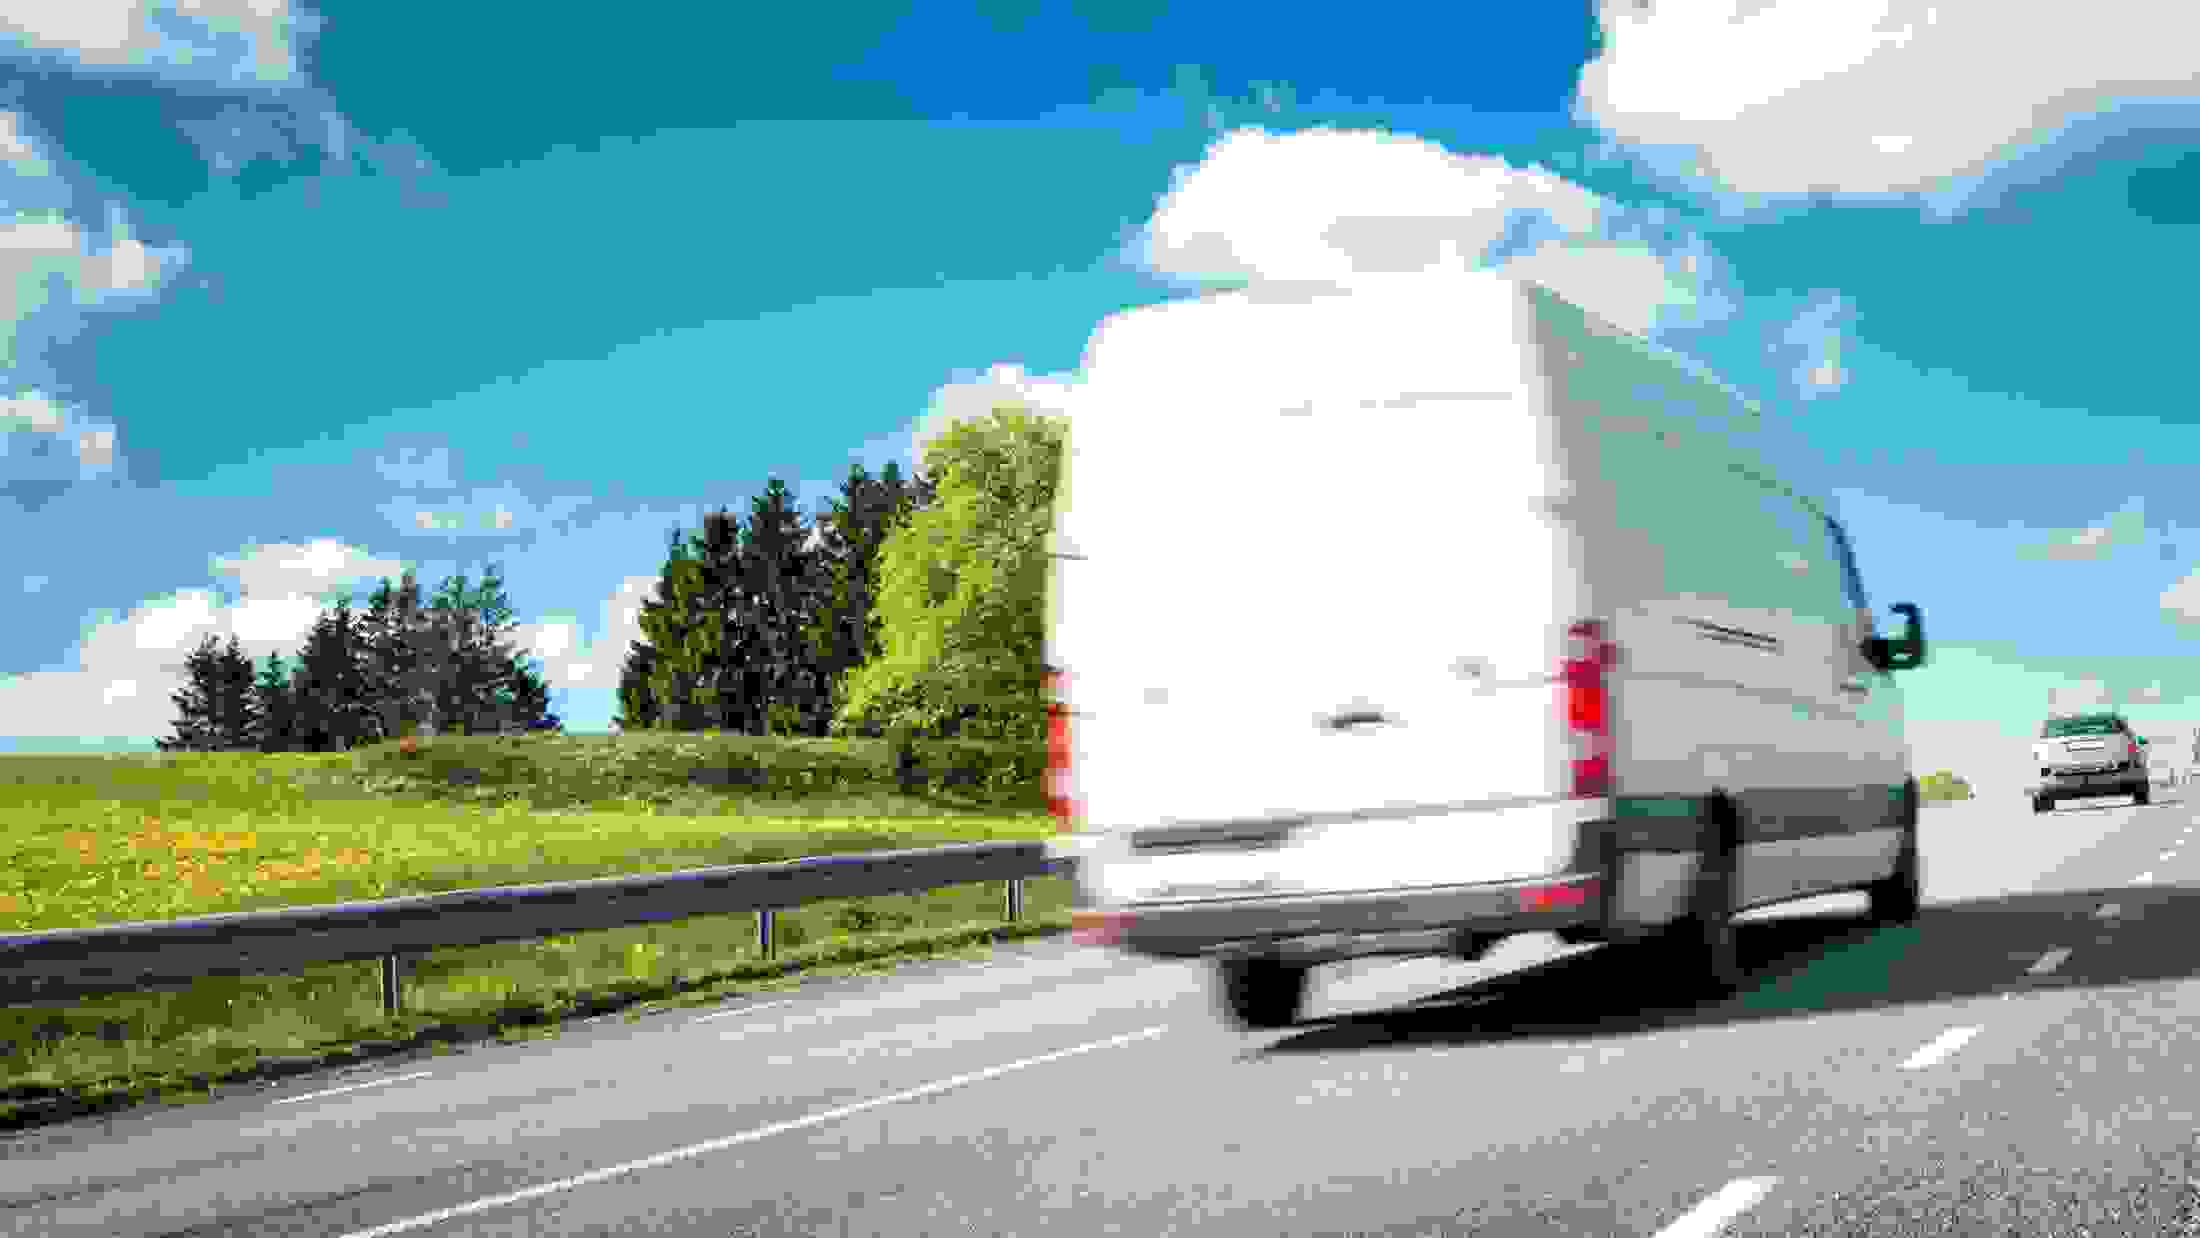 White van on road